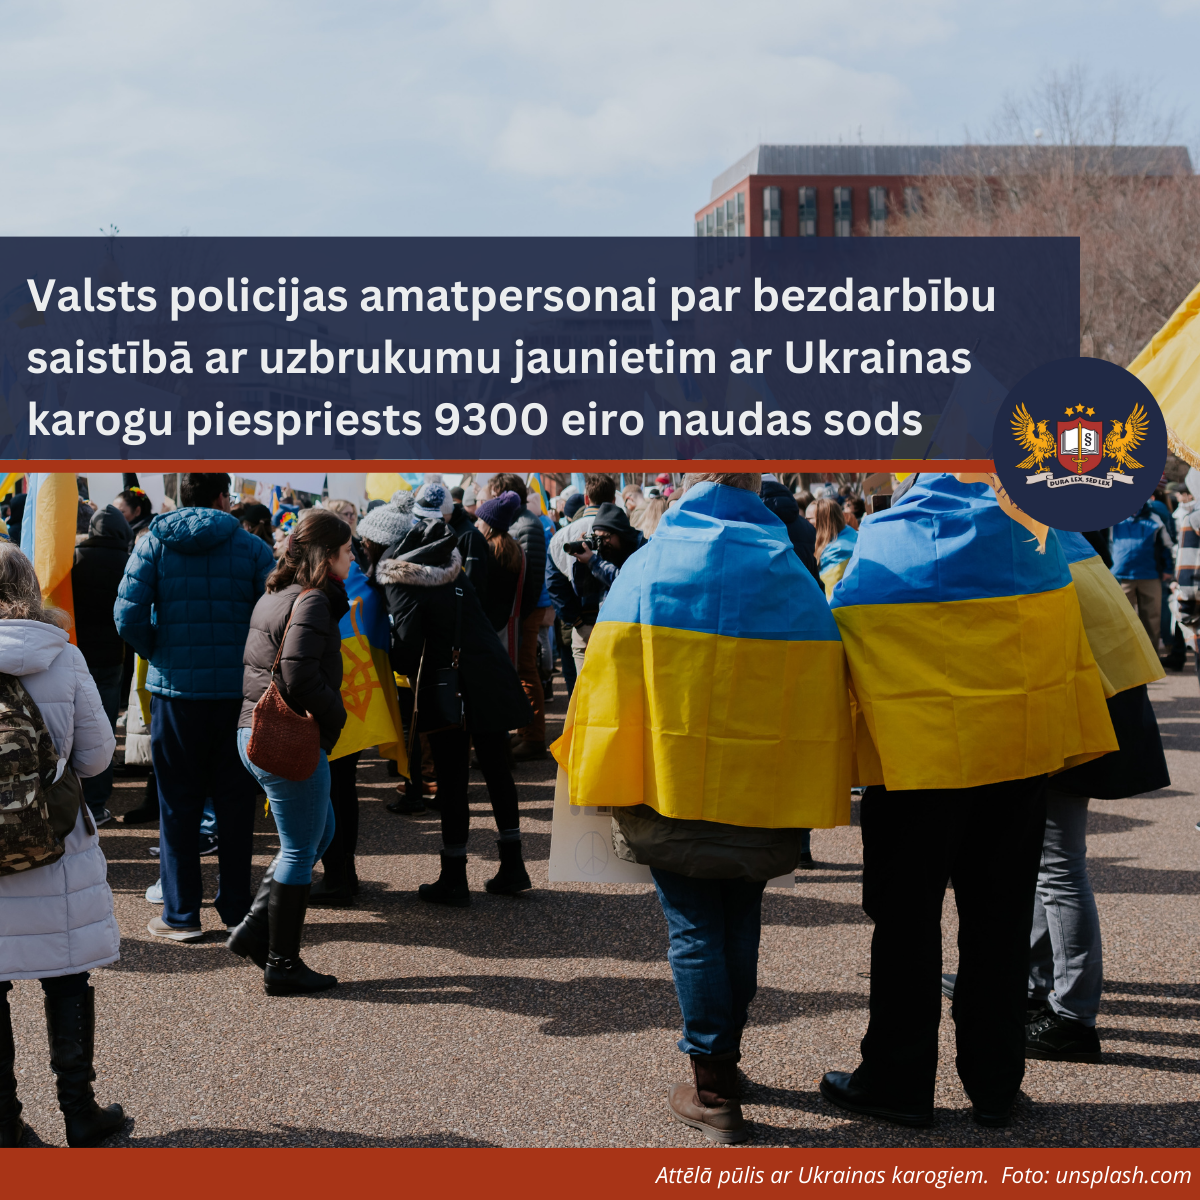 Valsts policijas amatpersonai par bezdarbību saistībā ar uzbrukumu jaunietim ar Ukrainas karogu piespriests 9300 eiro naudas sods